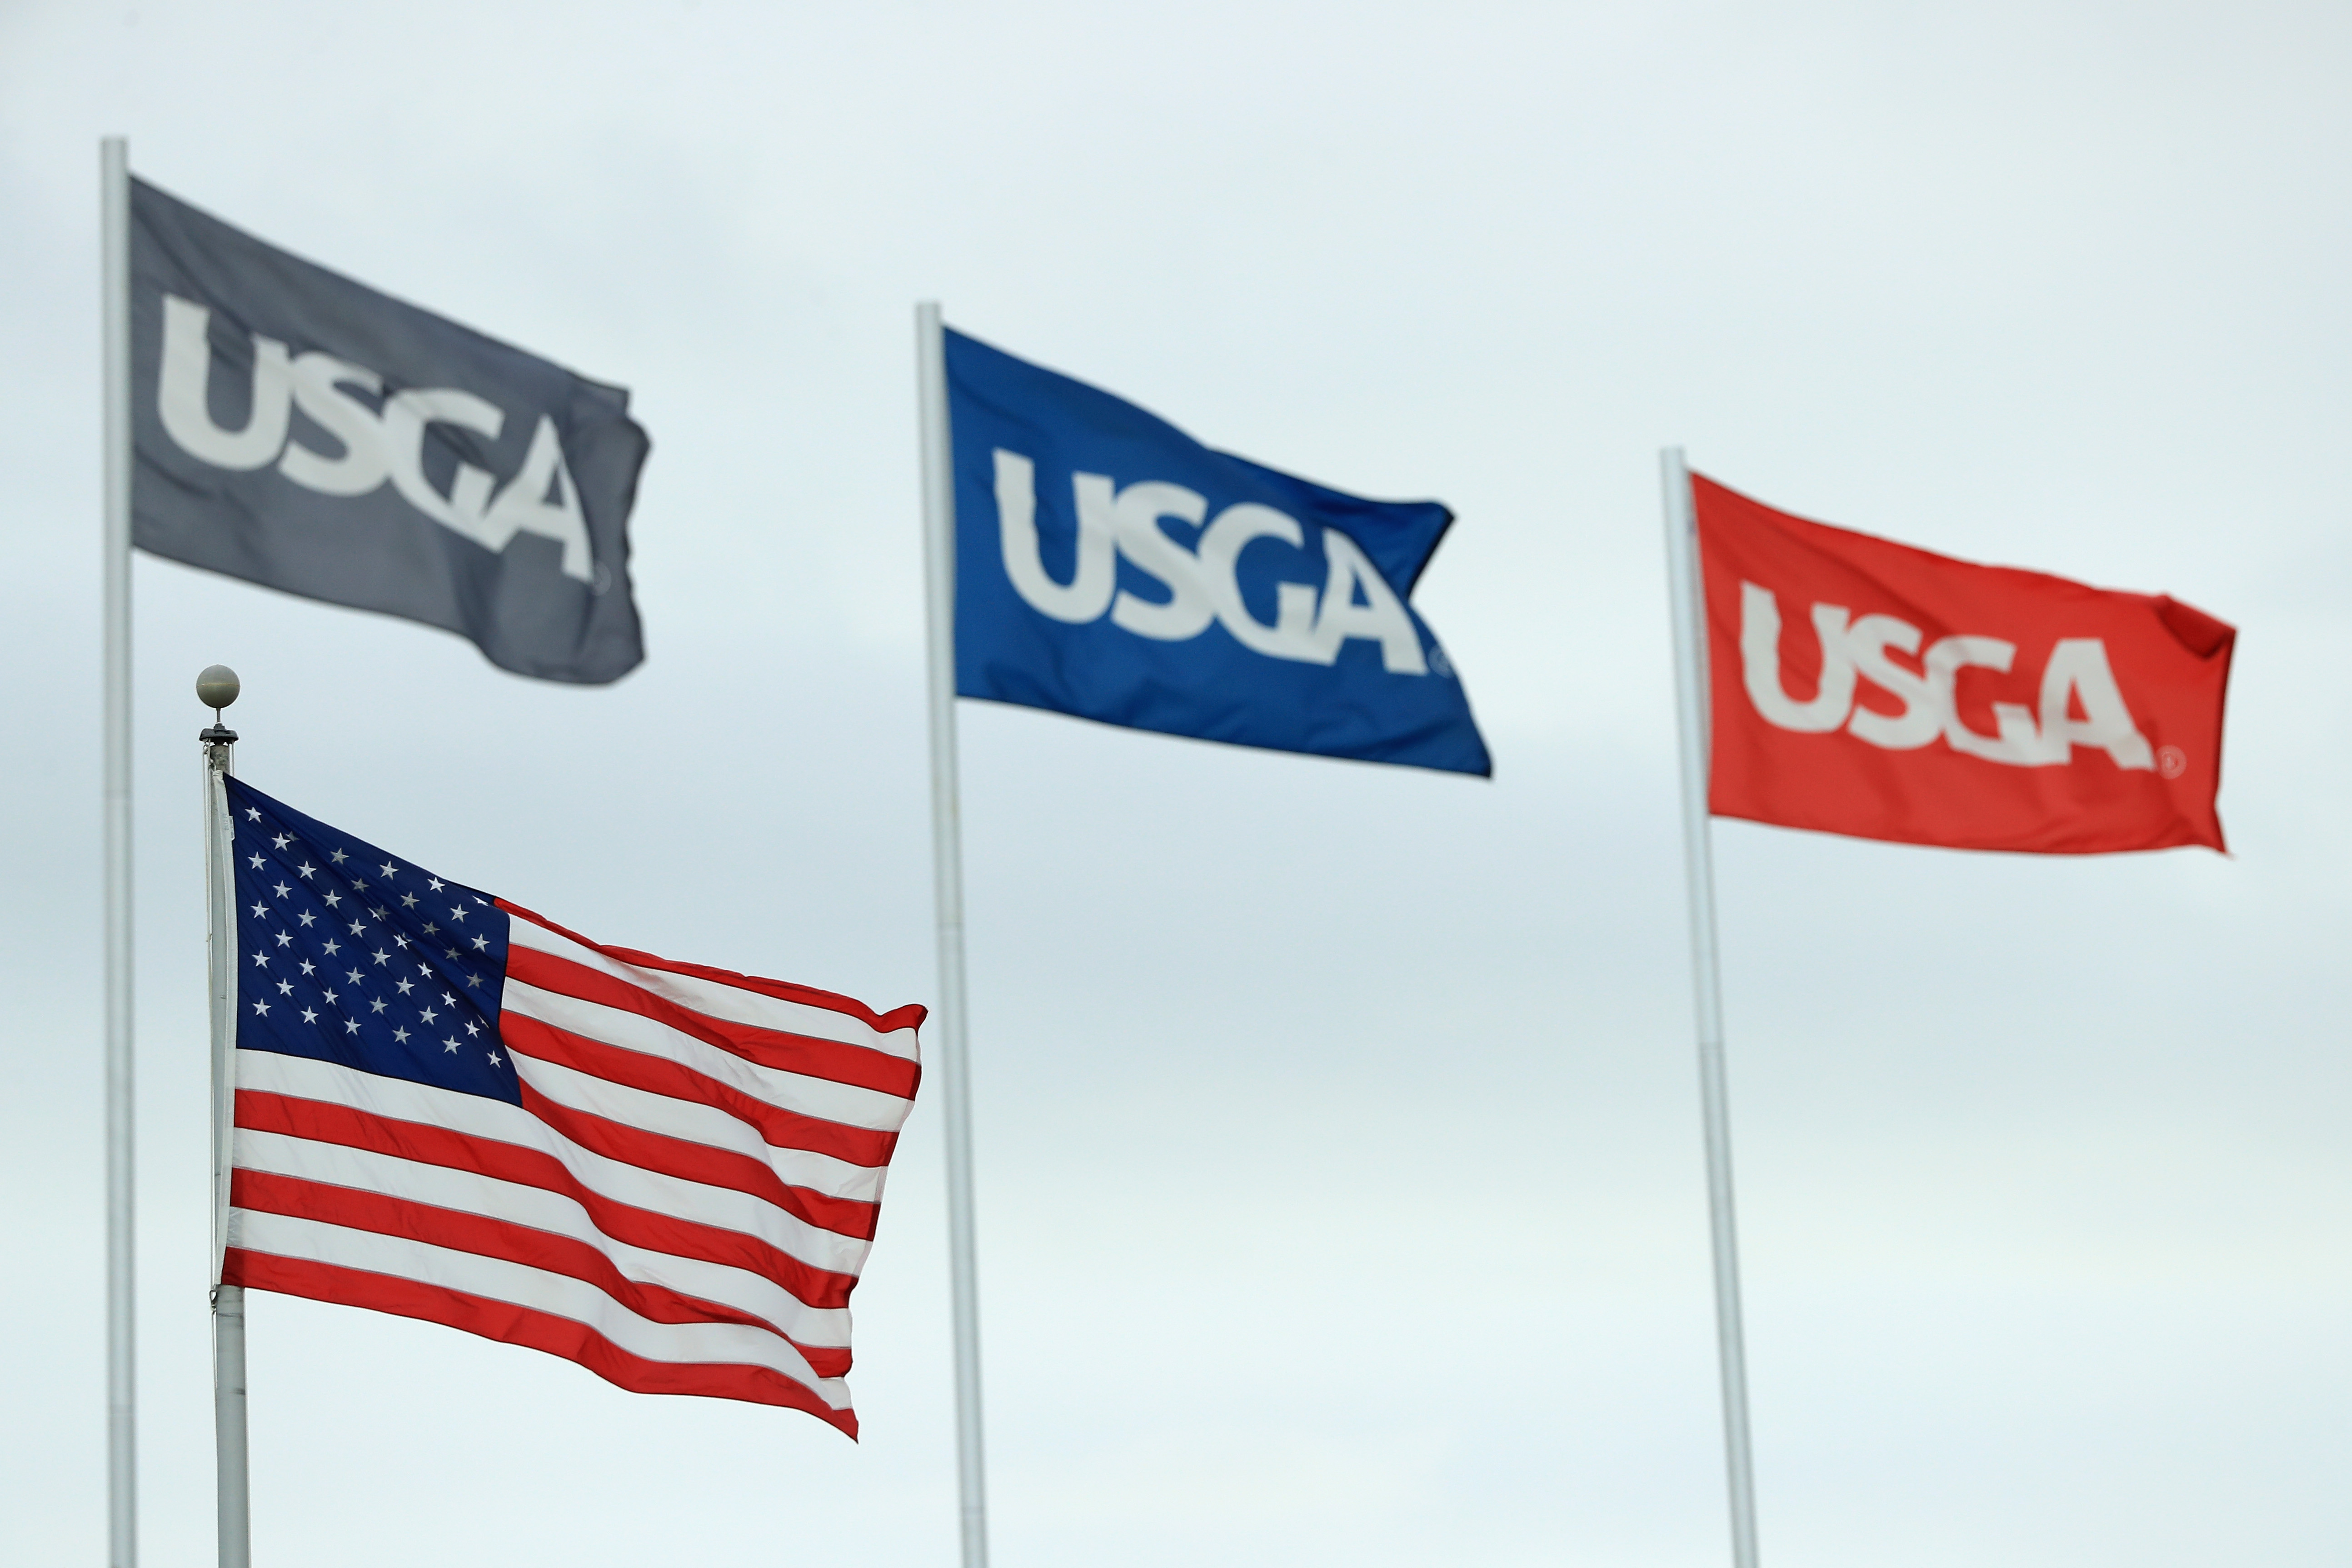 U.S. Open, USGA